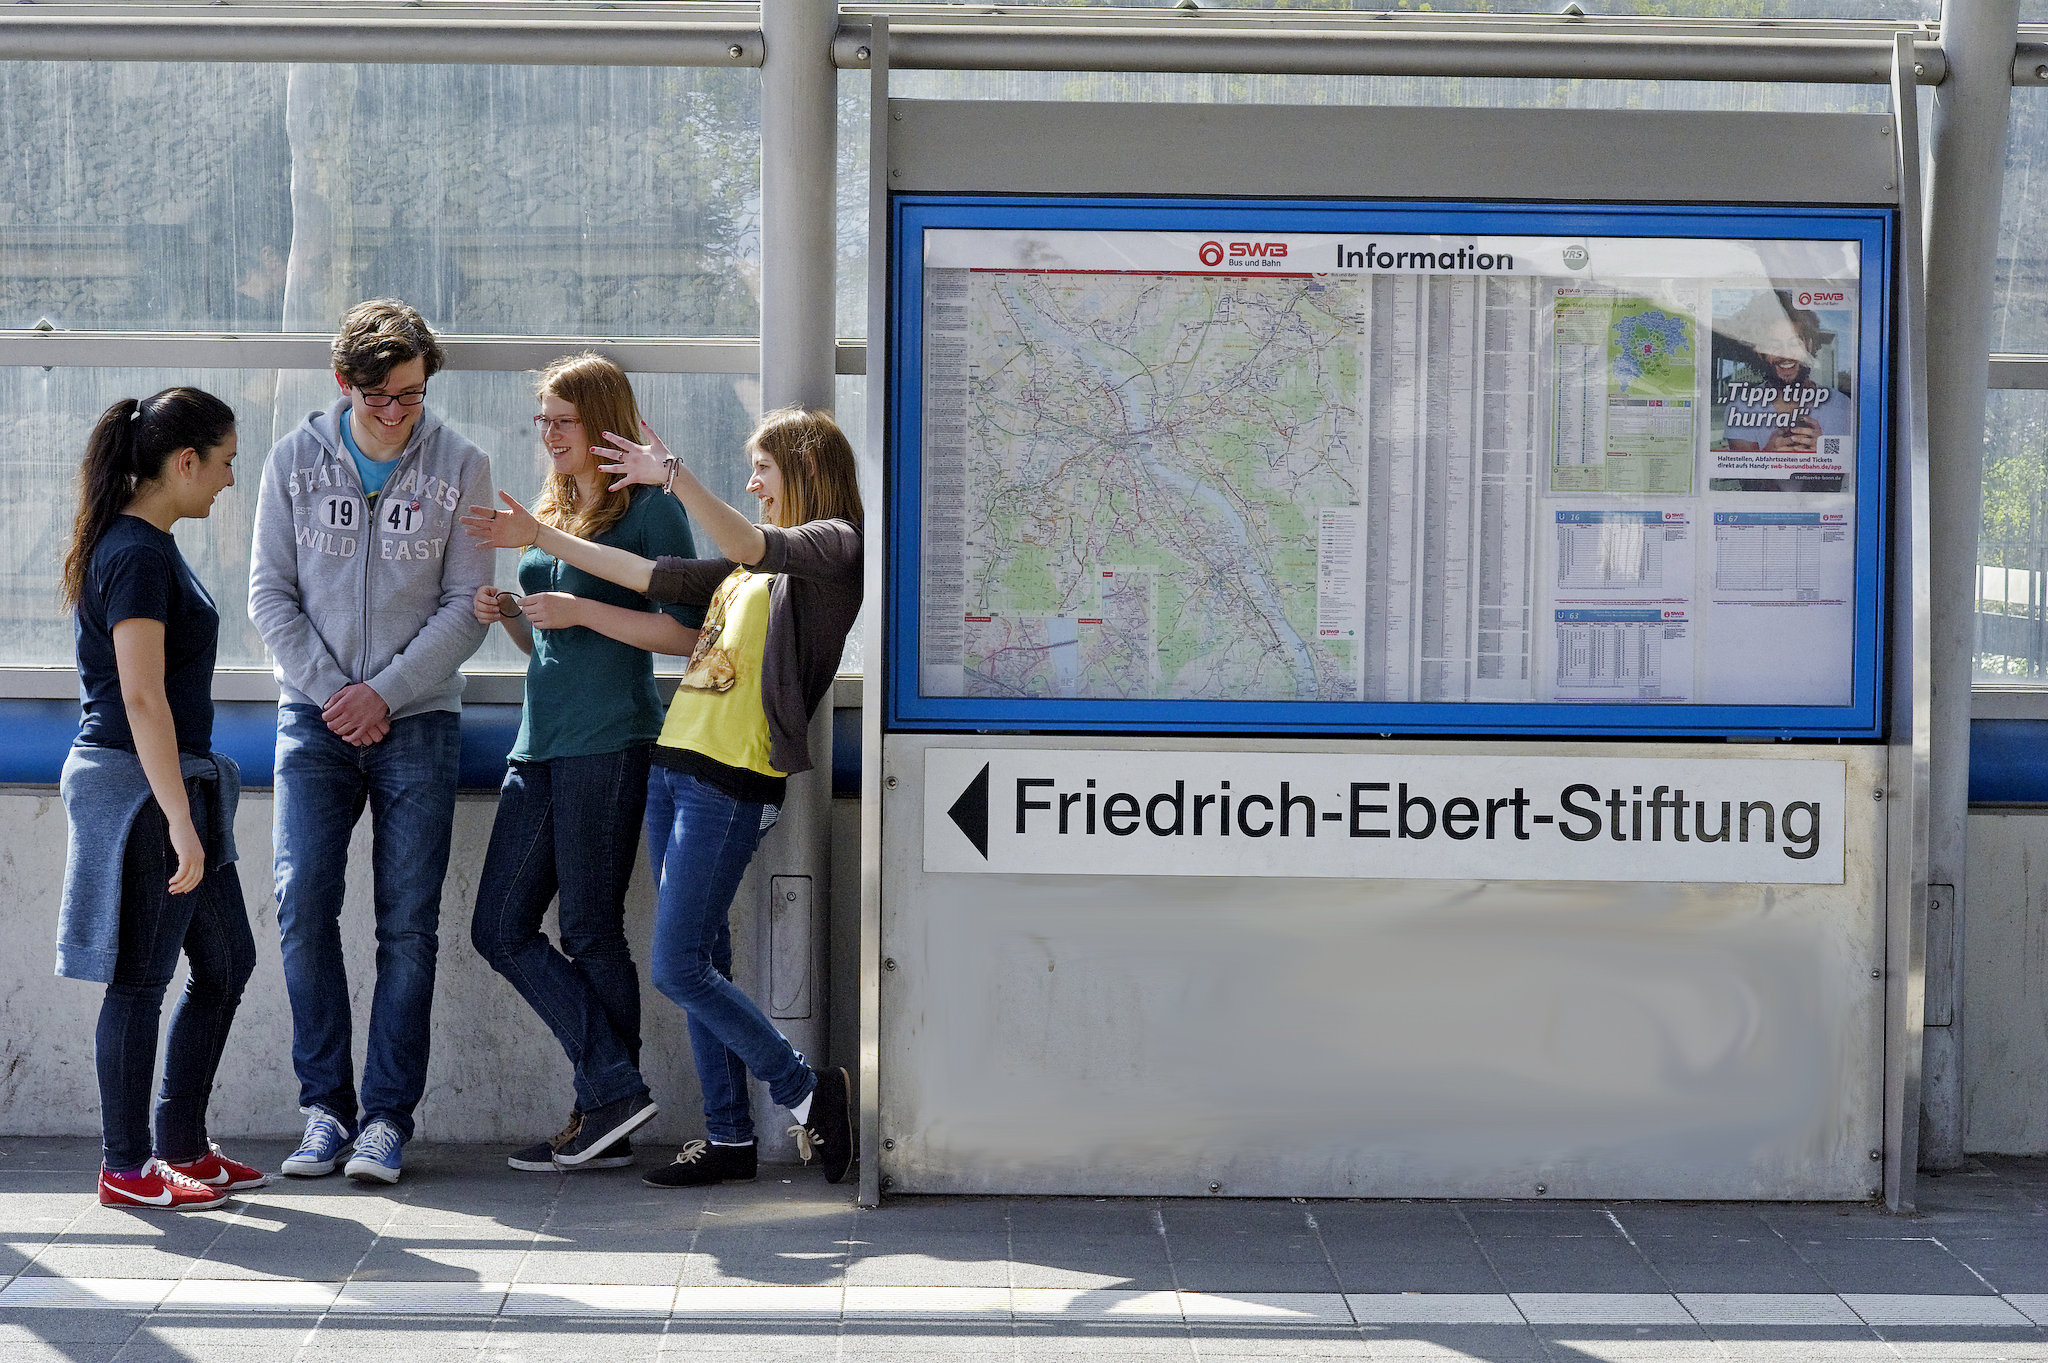 Menschen stehen an einer Straßenbahnhaltestelle. Dort zu sehen ist der Schriftzug: Friedrich-Ebert-Stiftung.